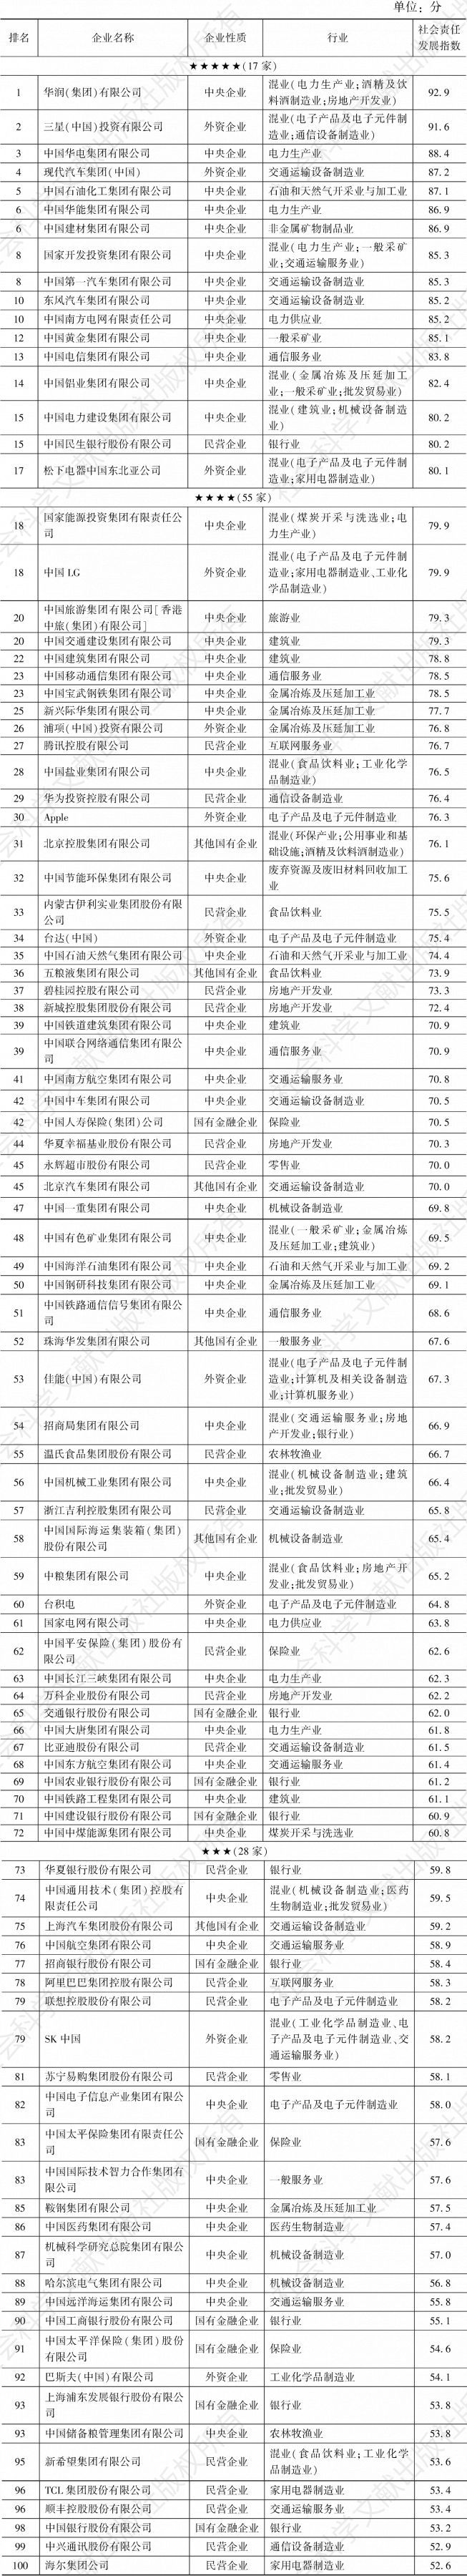 表5 中国企业300强社会责任发展指数排名前100位（2020）